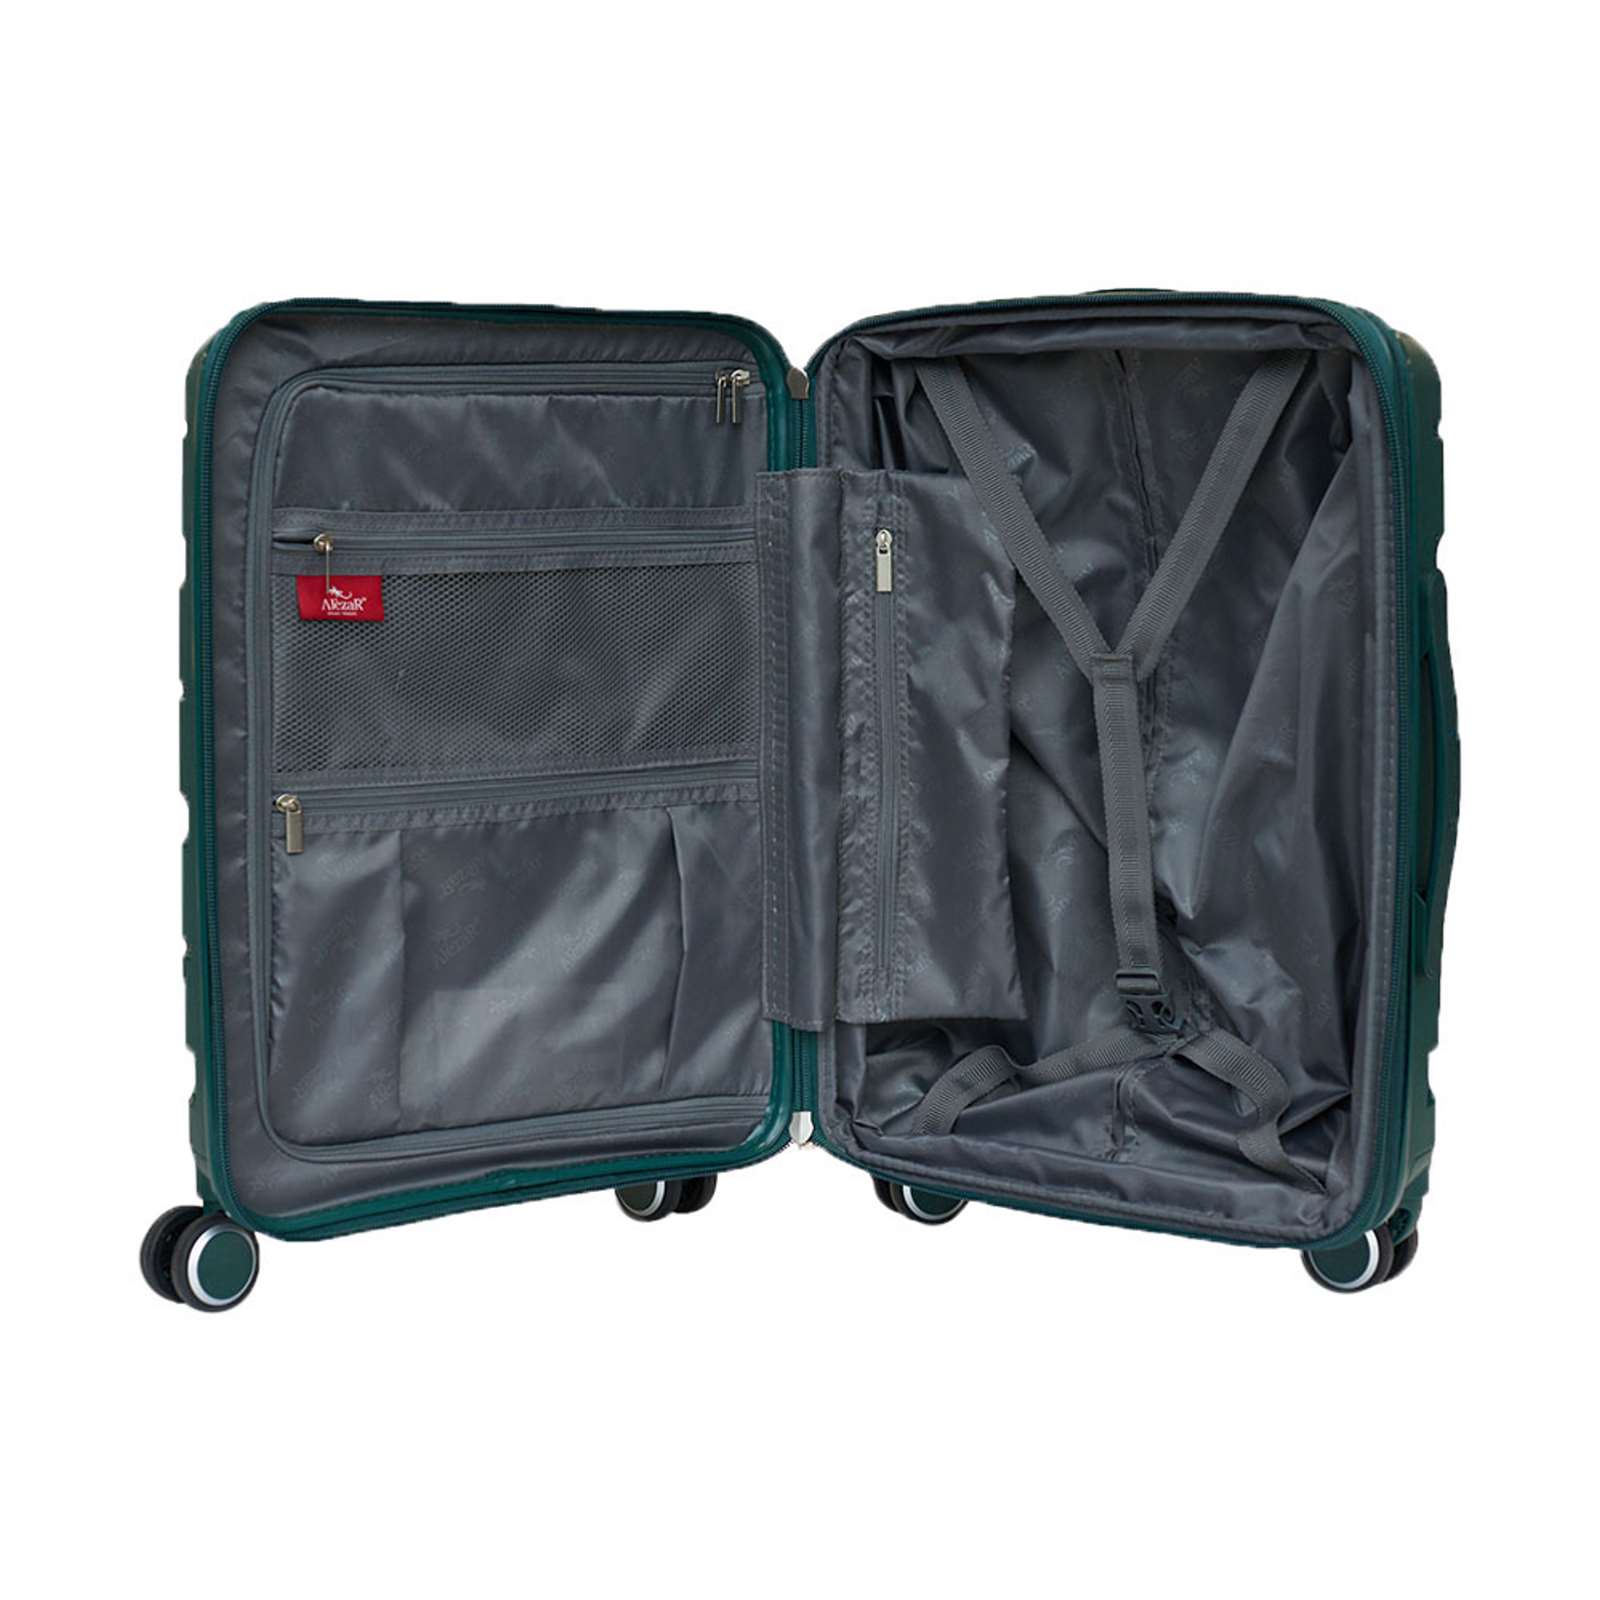 ALEZAR LUX Travel Bag Green (20